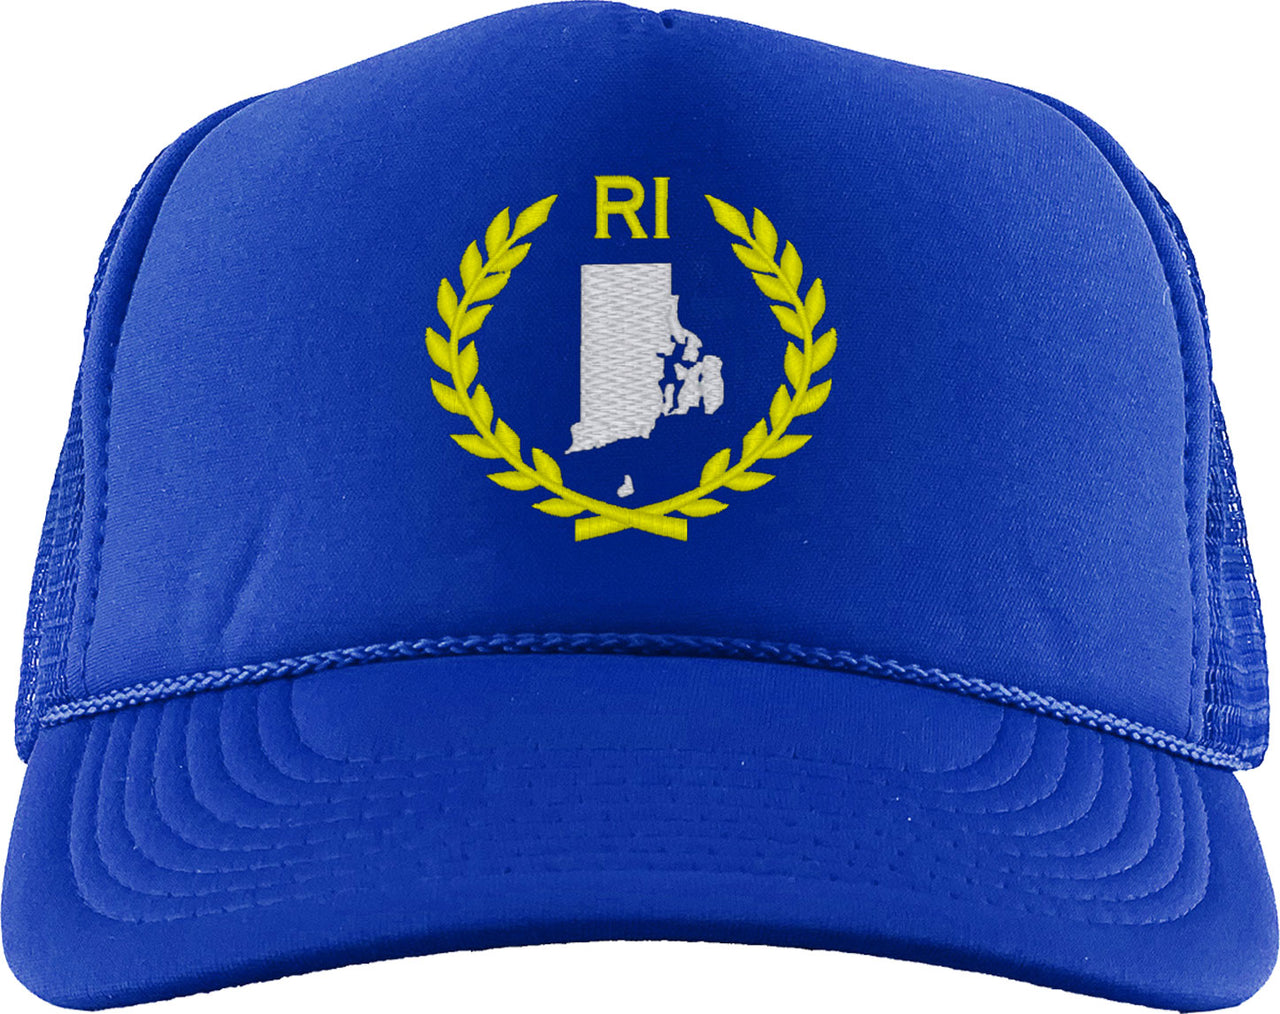 Rhode Island State Foam Trucker Hat